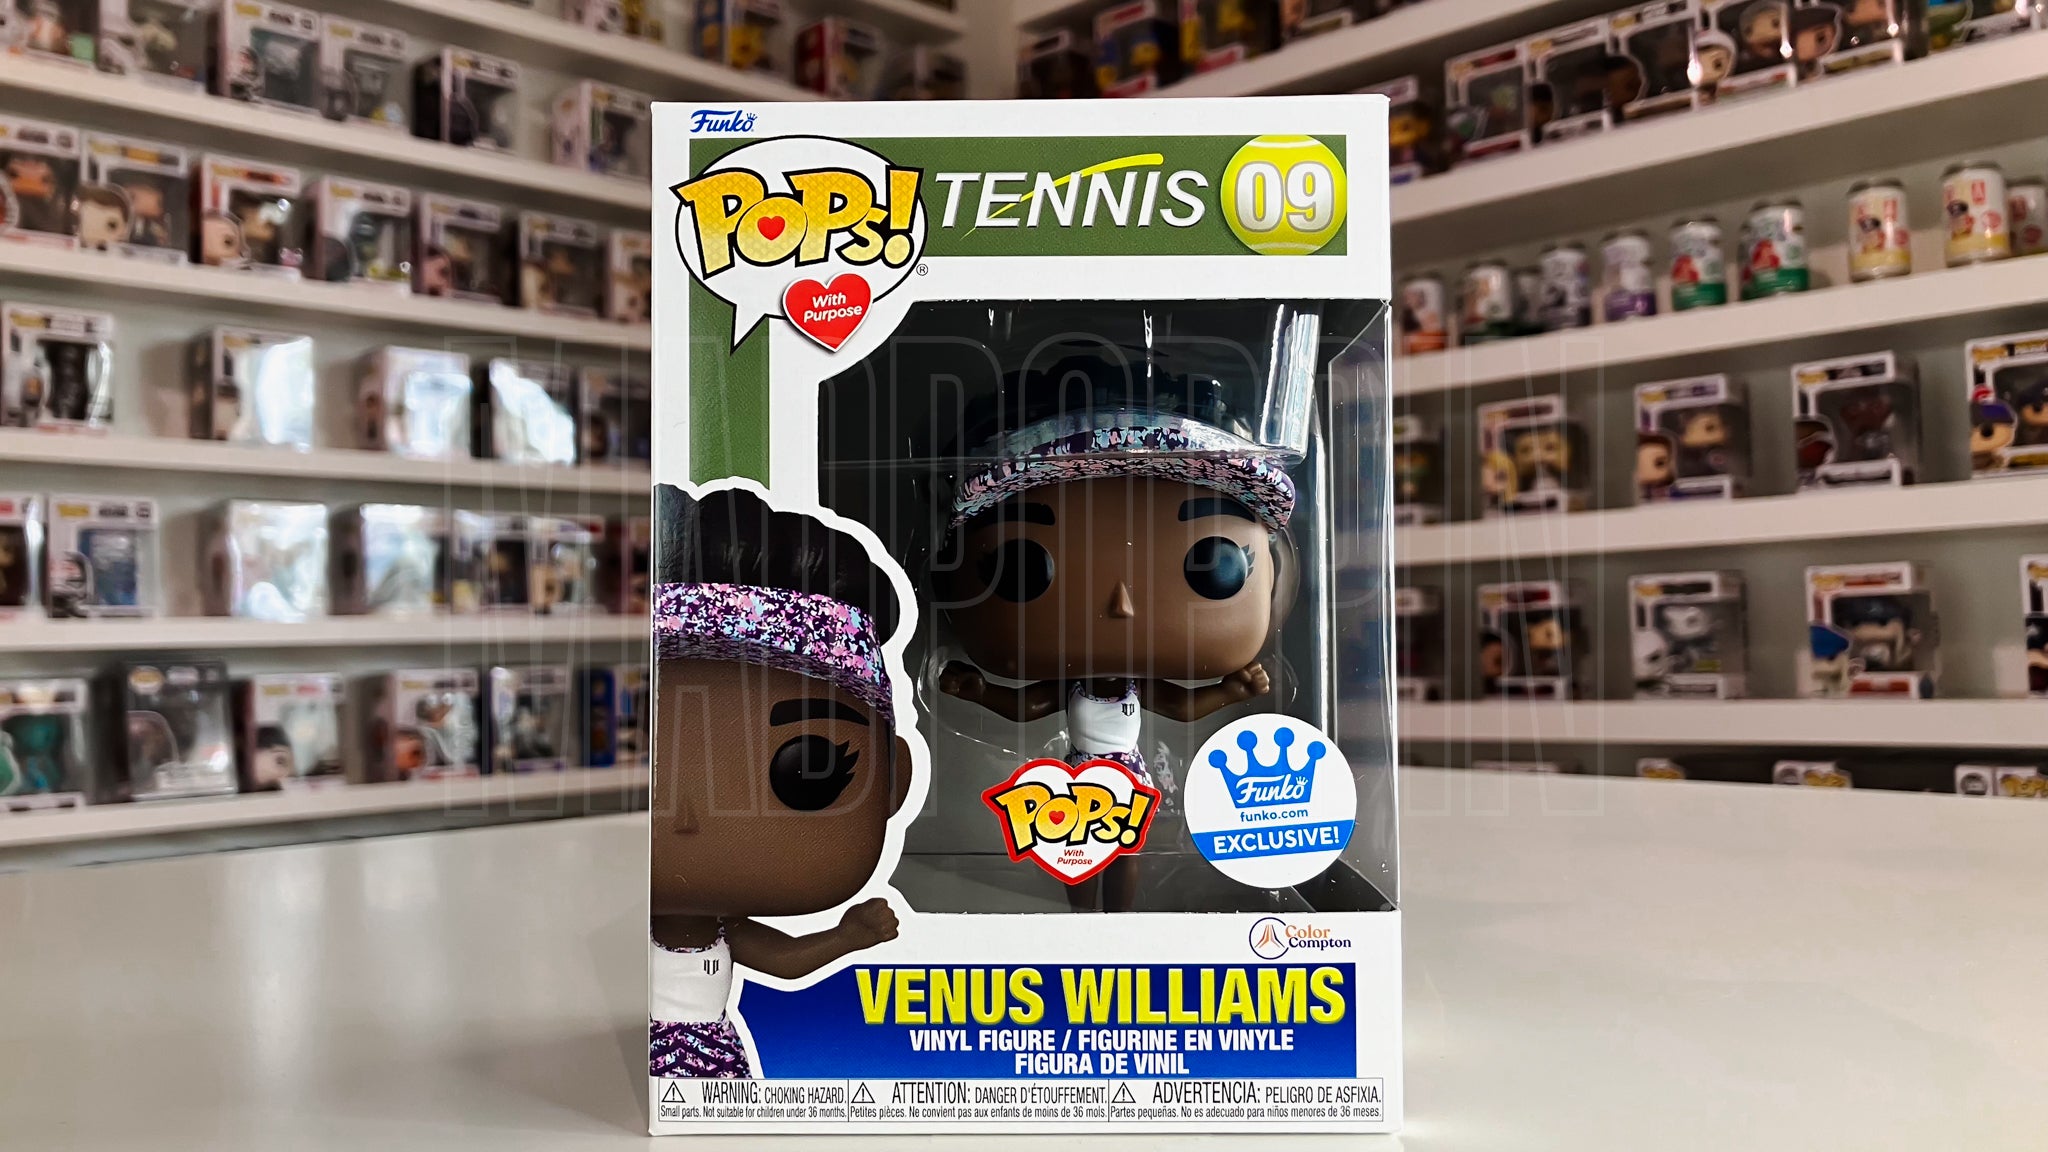 Funko Pops w/Purpose Tennis Color Compton Venus Williams Funko.com Exclusive 09